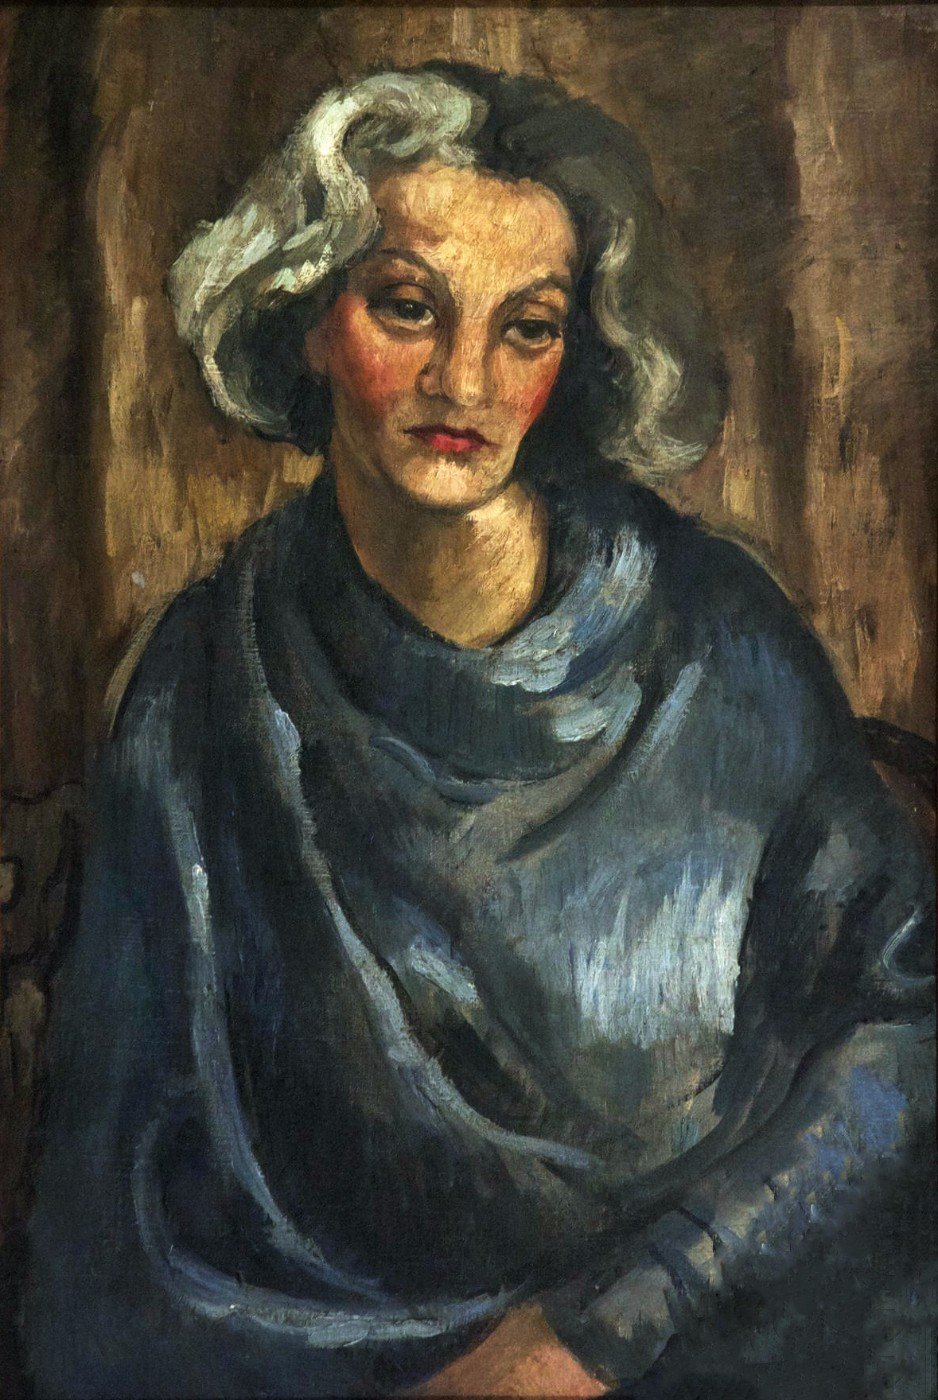 타츌리츠키 부인 by 암리타 셔 길 - 1930 - 54 x 80cm 